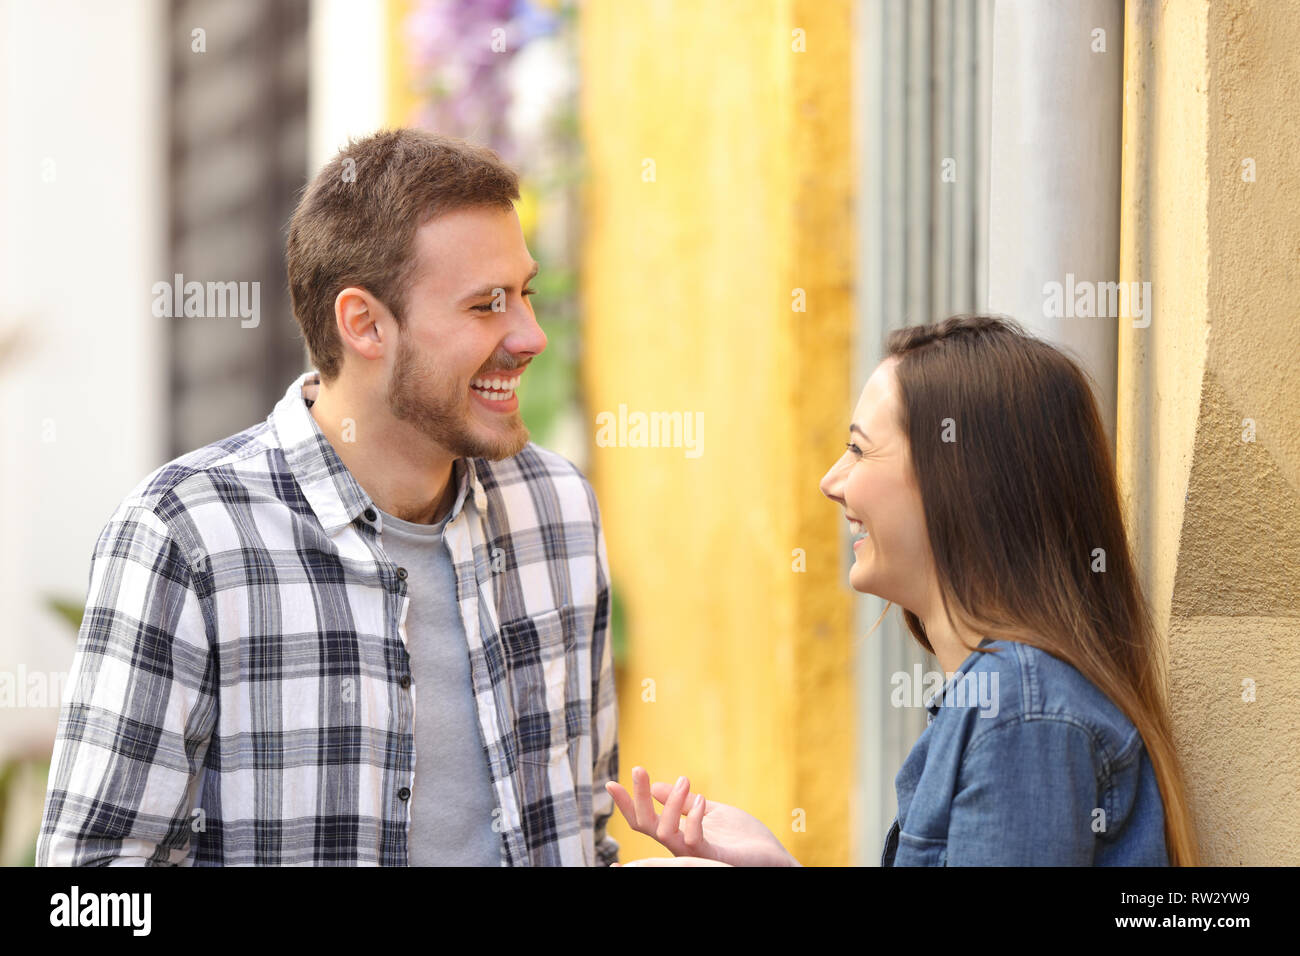 Heureux couple parler et rire debout dans une rue colorée Banque D'Images